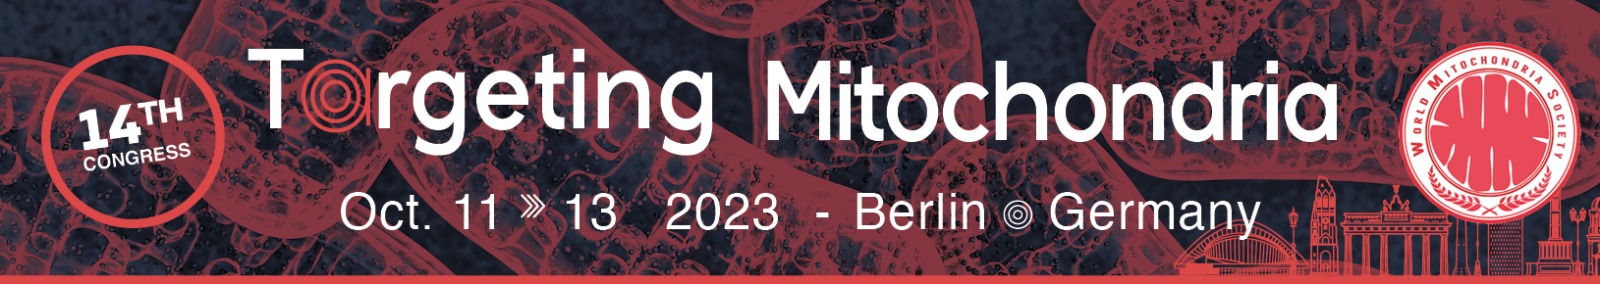 Logo Targeting Mitochondria 2023